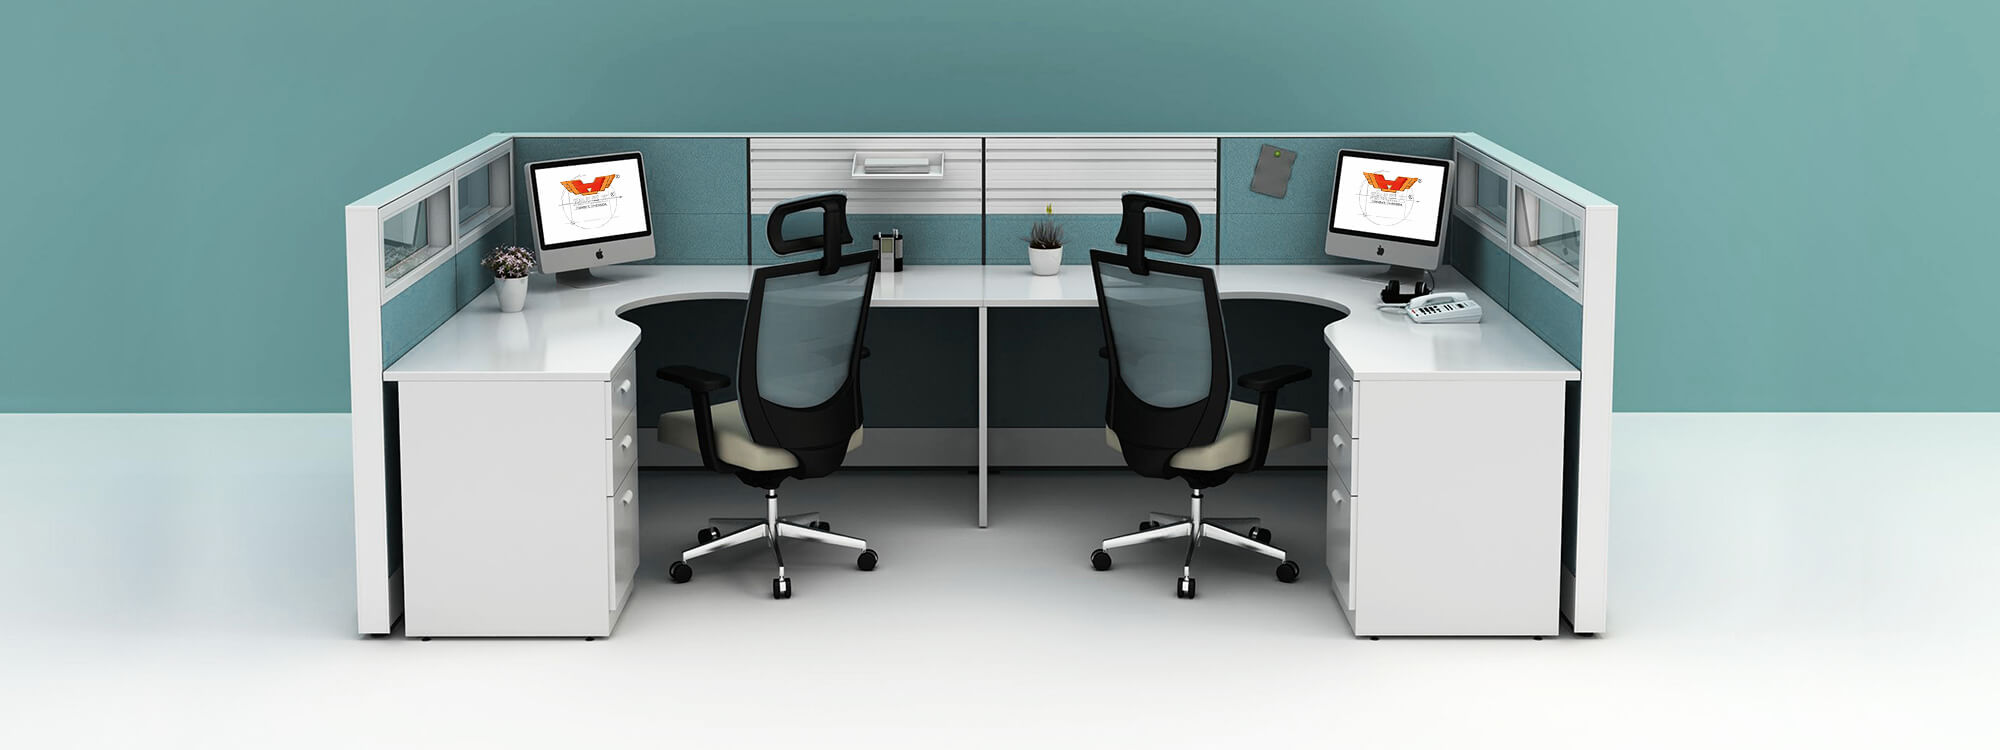 Модульная кабина как модульная мебель может поддерживать любой дизайн офисного помещения, чтобы помочь рабочим местам полностью раскрыть свой потенциал.